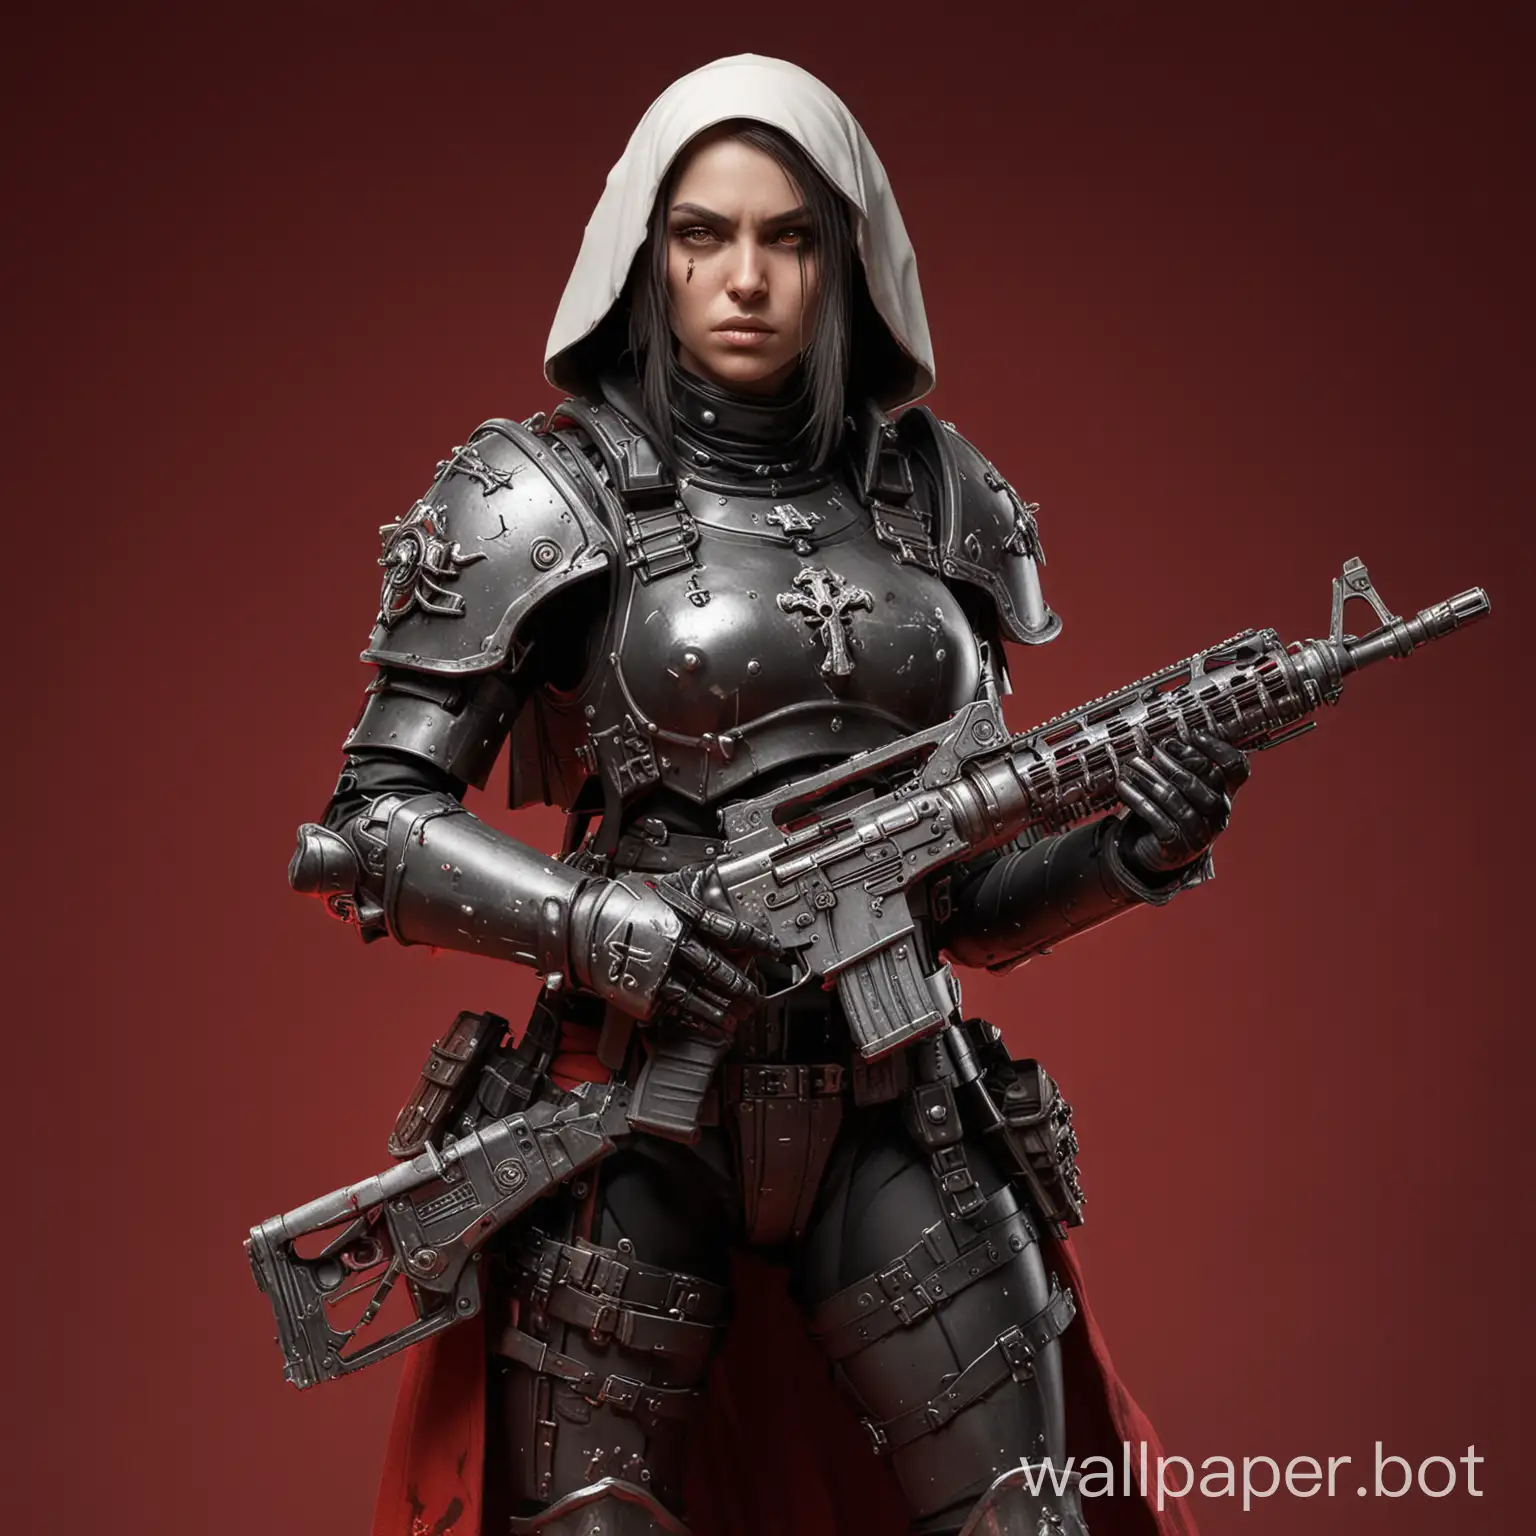 Mercenary-Nun-Girl-in-Heavy-Armor-Wielding-Submachine-Gun-Warhammer-40000-Sisters-of-Battle-Fan-Art